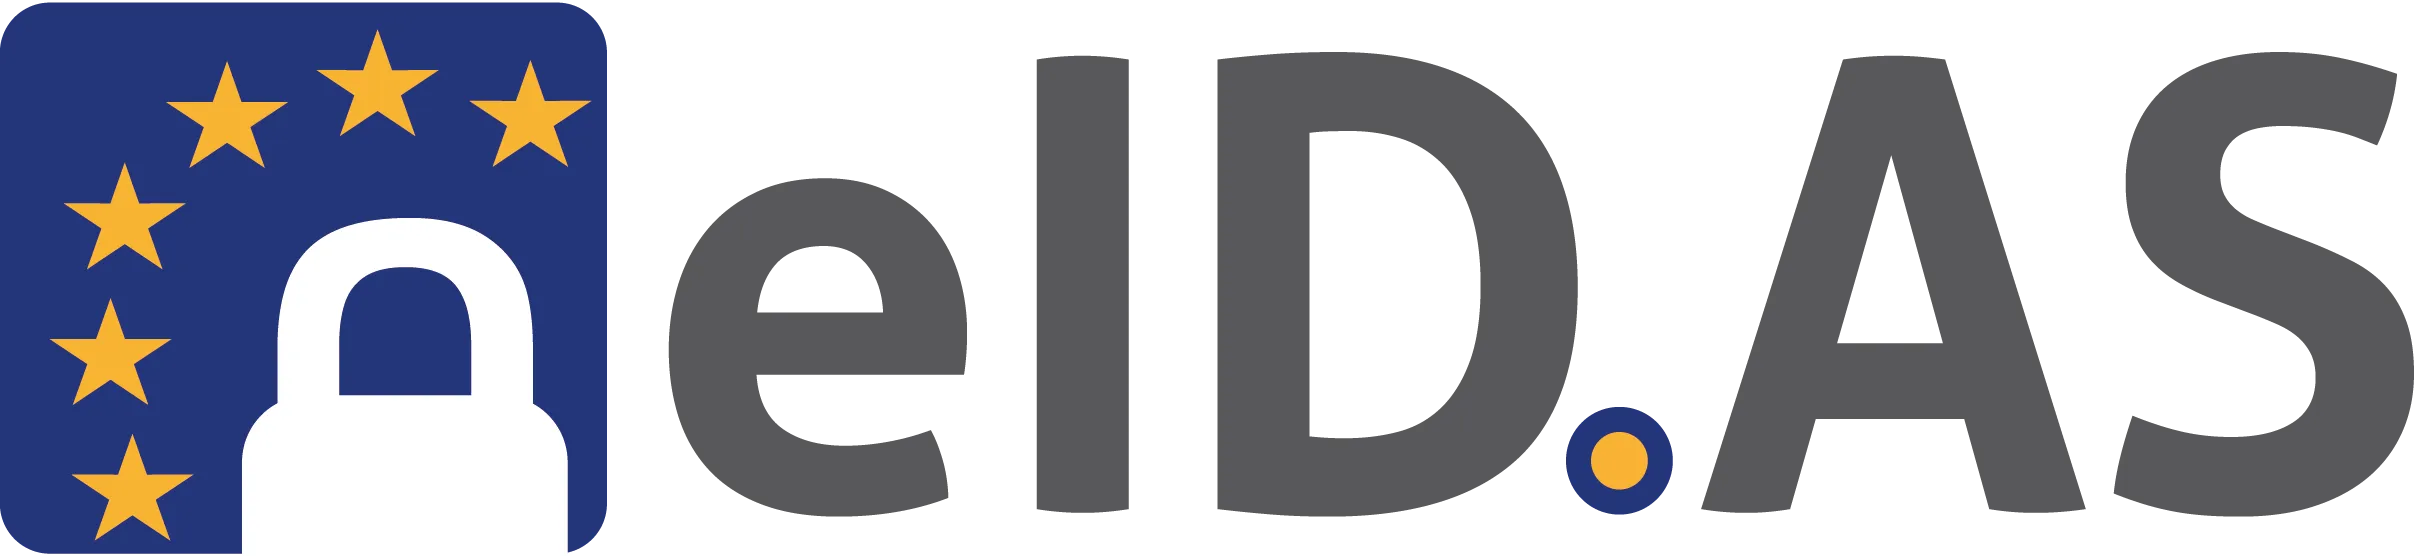 eIDAS logo